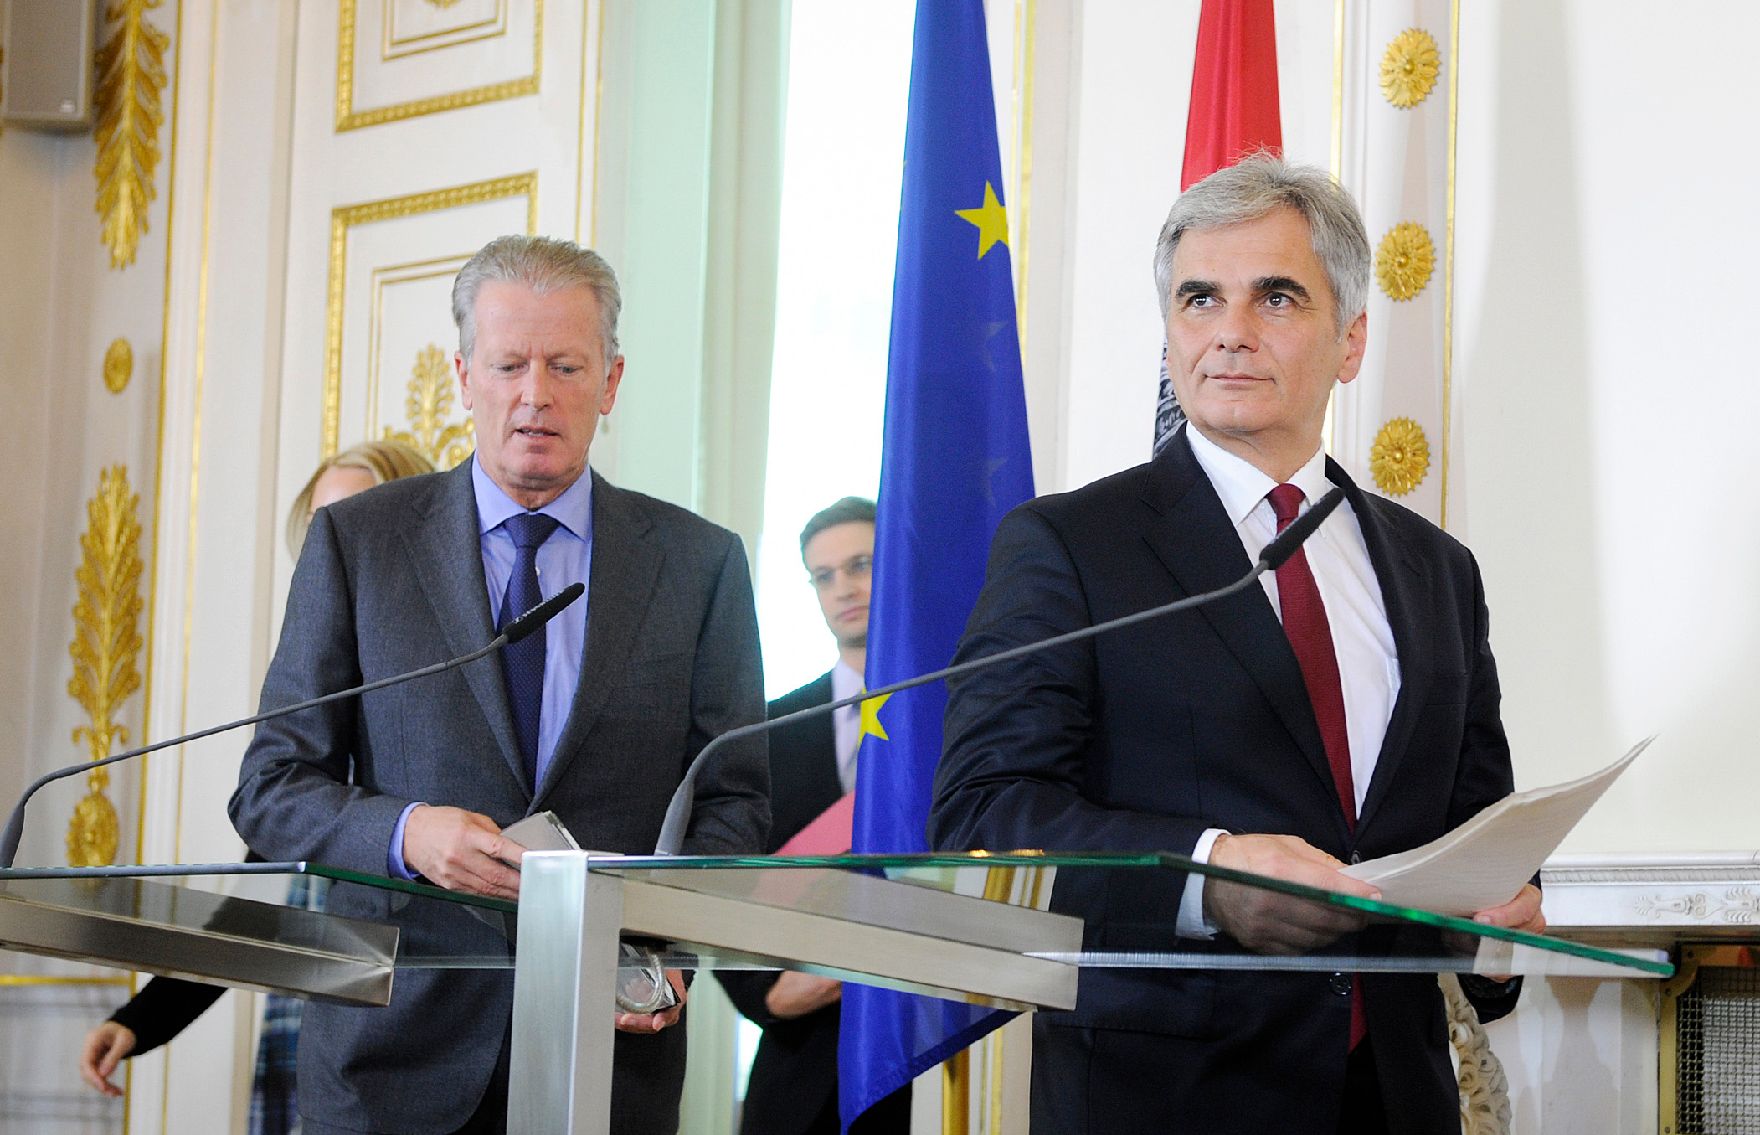 Bundeskanzler Werner Faymann (r.) mit Vizekanzler und Bundesminister Reinhold Mitterlehner (l.) beim Pressefoyer nach dem Ministerrat am 10. November 2015.